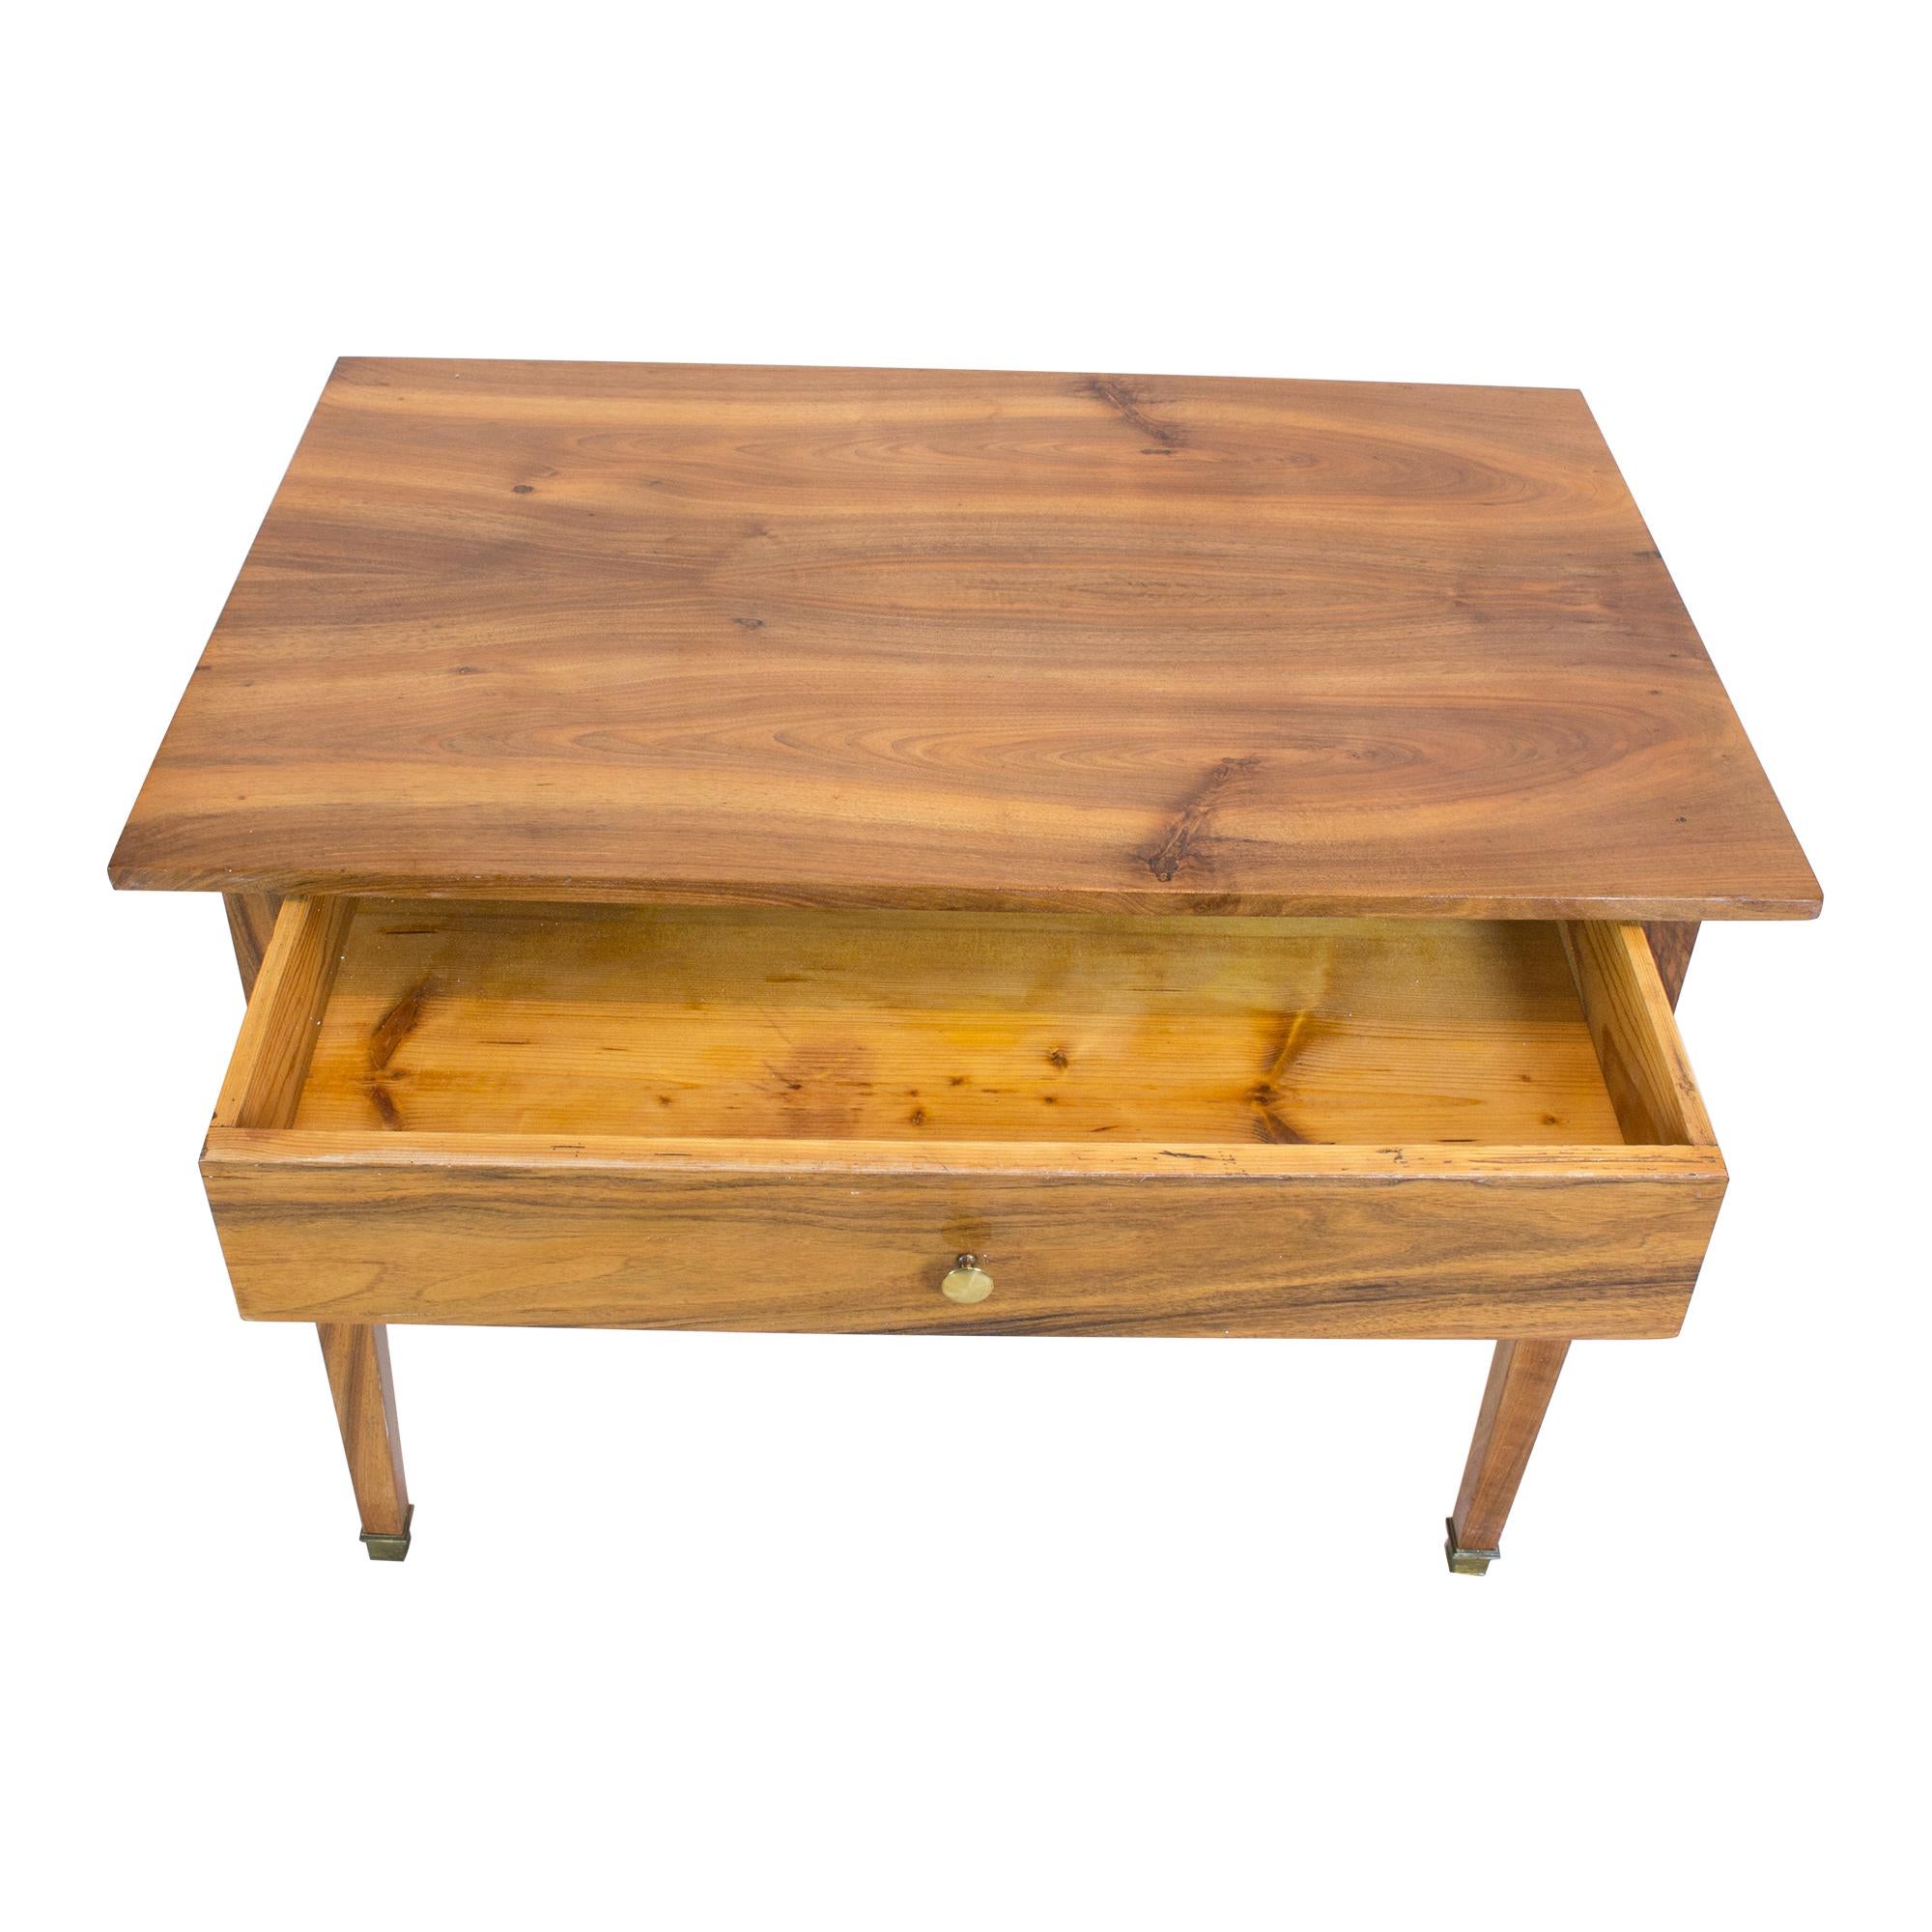 Der Beistelltisch ist aus massivem und furniertem Nussbaumholz gefertigt, die Tischbeine und die Platte sind aus massivem Nussbaumholz. Ein wunderschönes, zeitloses Design aus der Zeit des Biedermeier um 1825. Die Schublade ist, wie üblich, aus